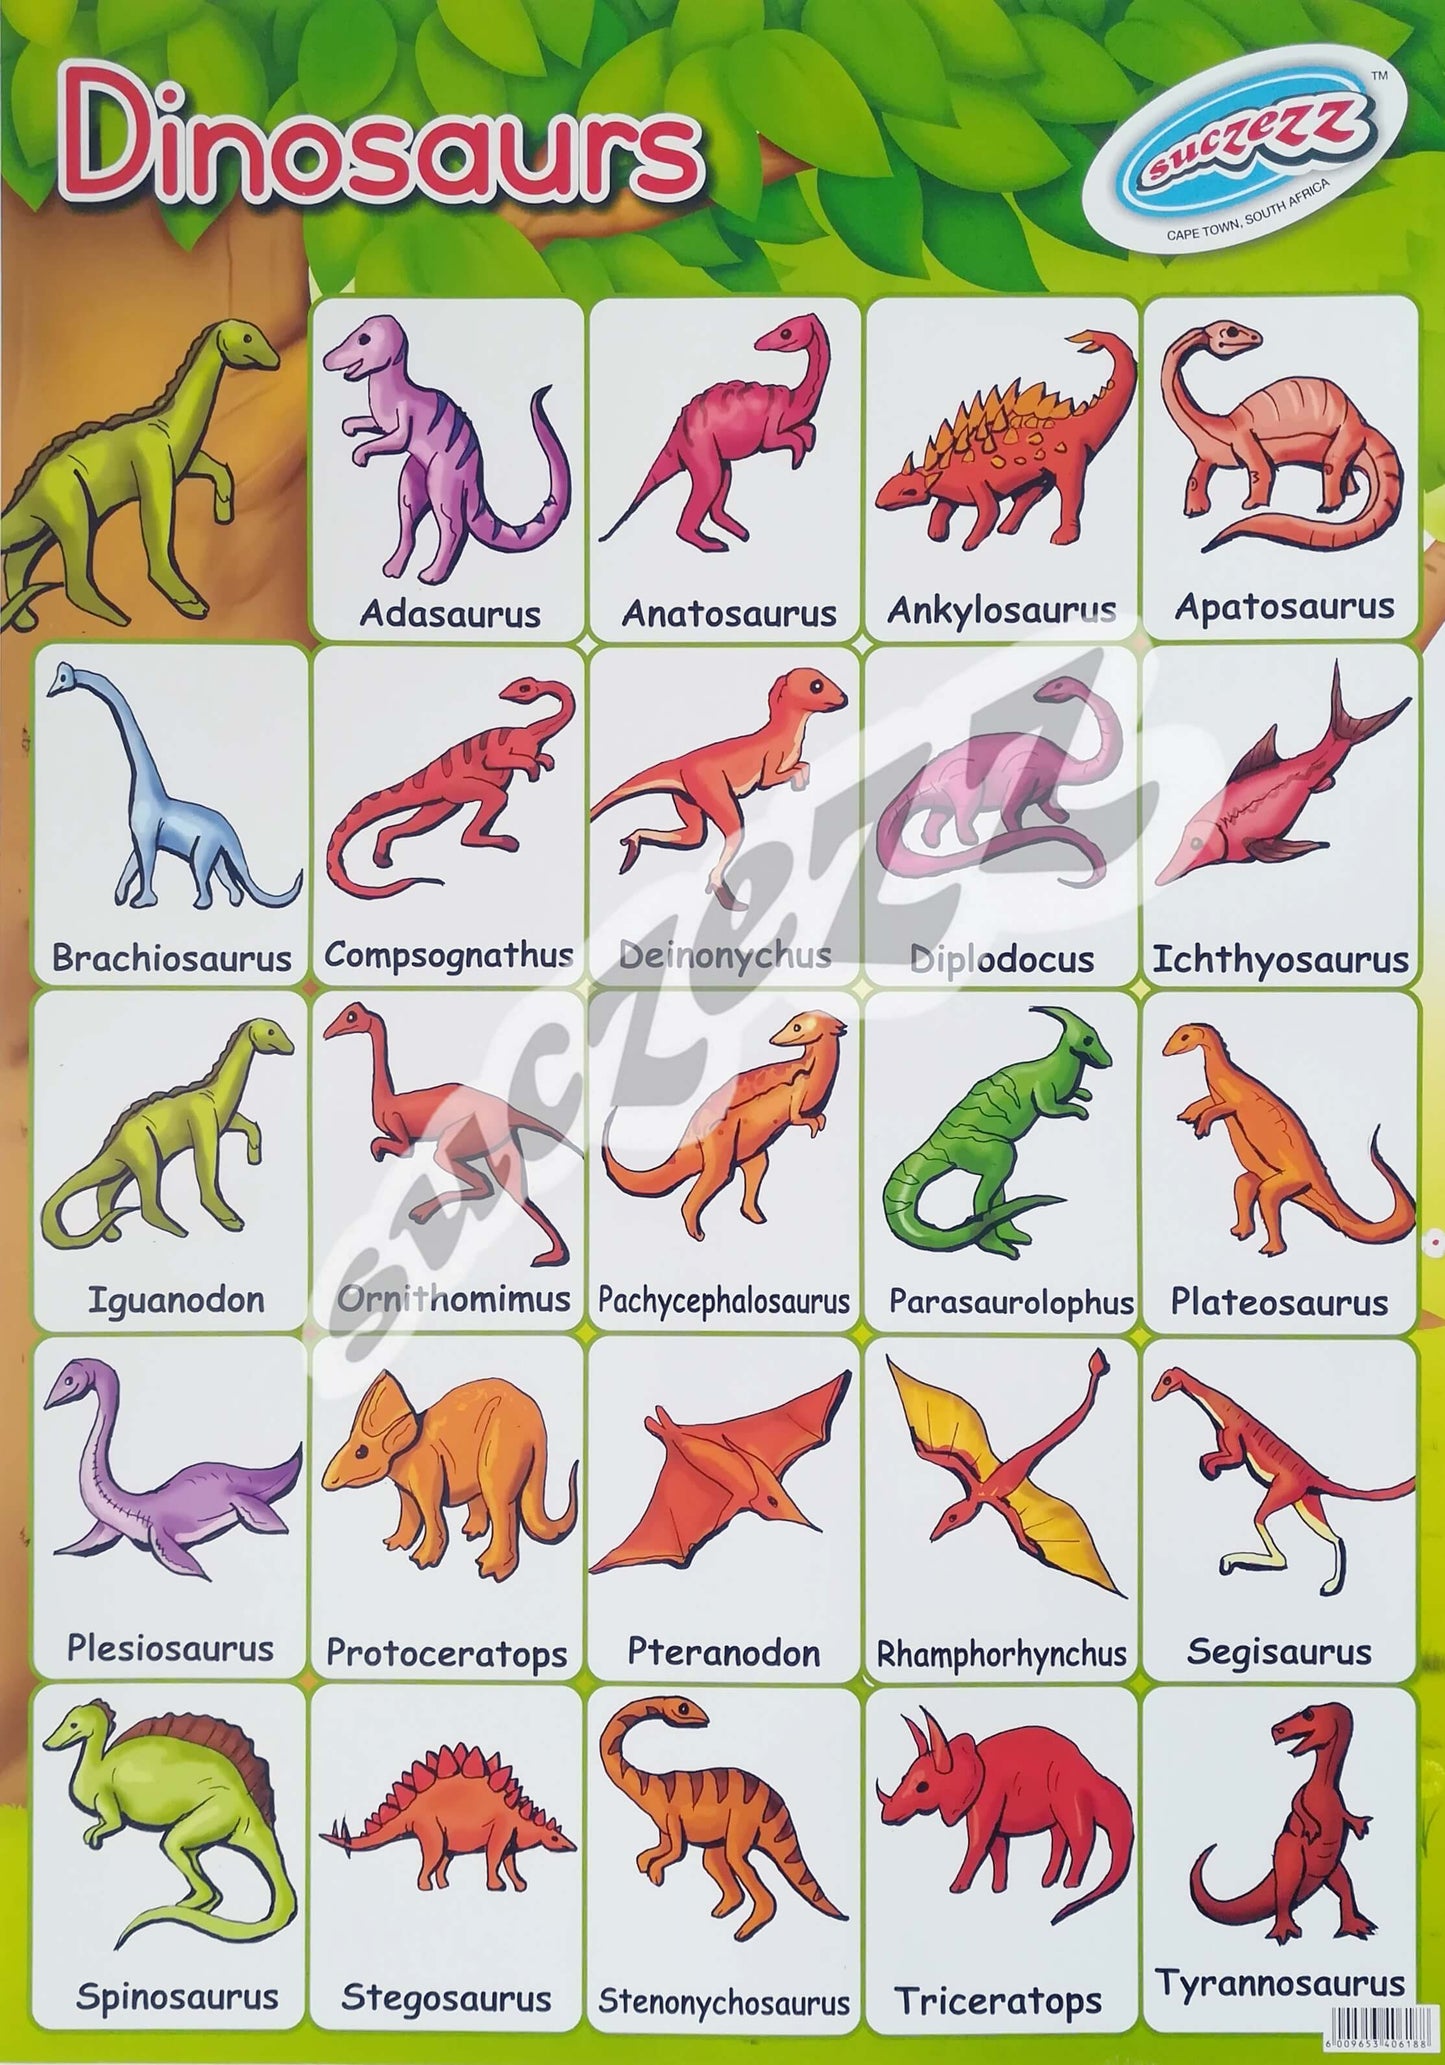 Muurkaart - Dinosourusse